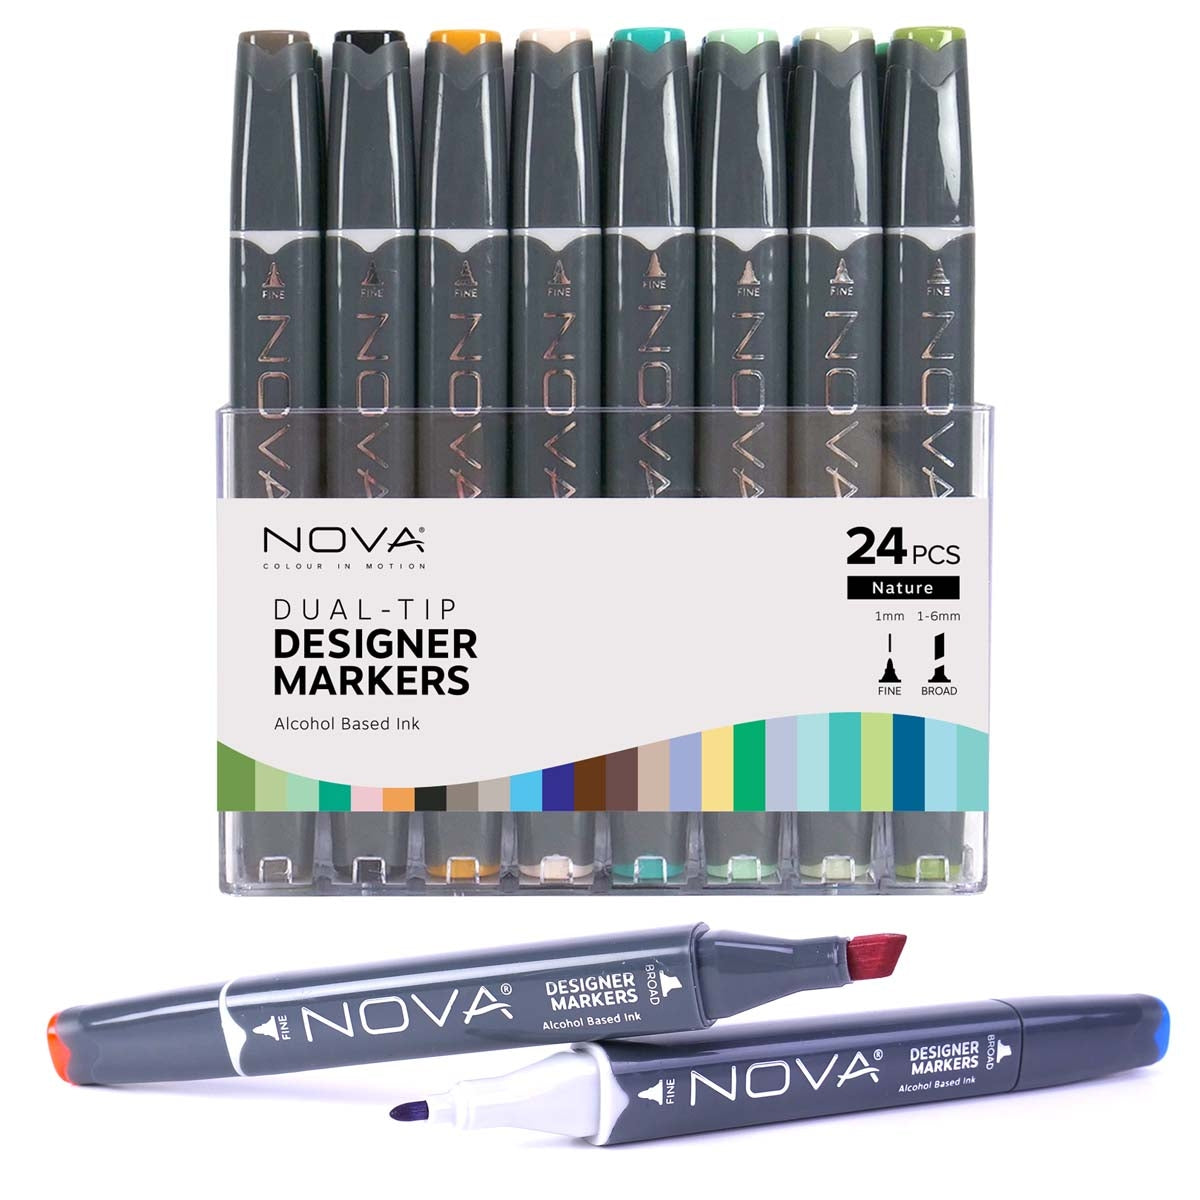 Nova - Designer Markers - Dual Tip - Alcohol Based - 24 Pack - Nature